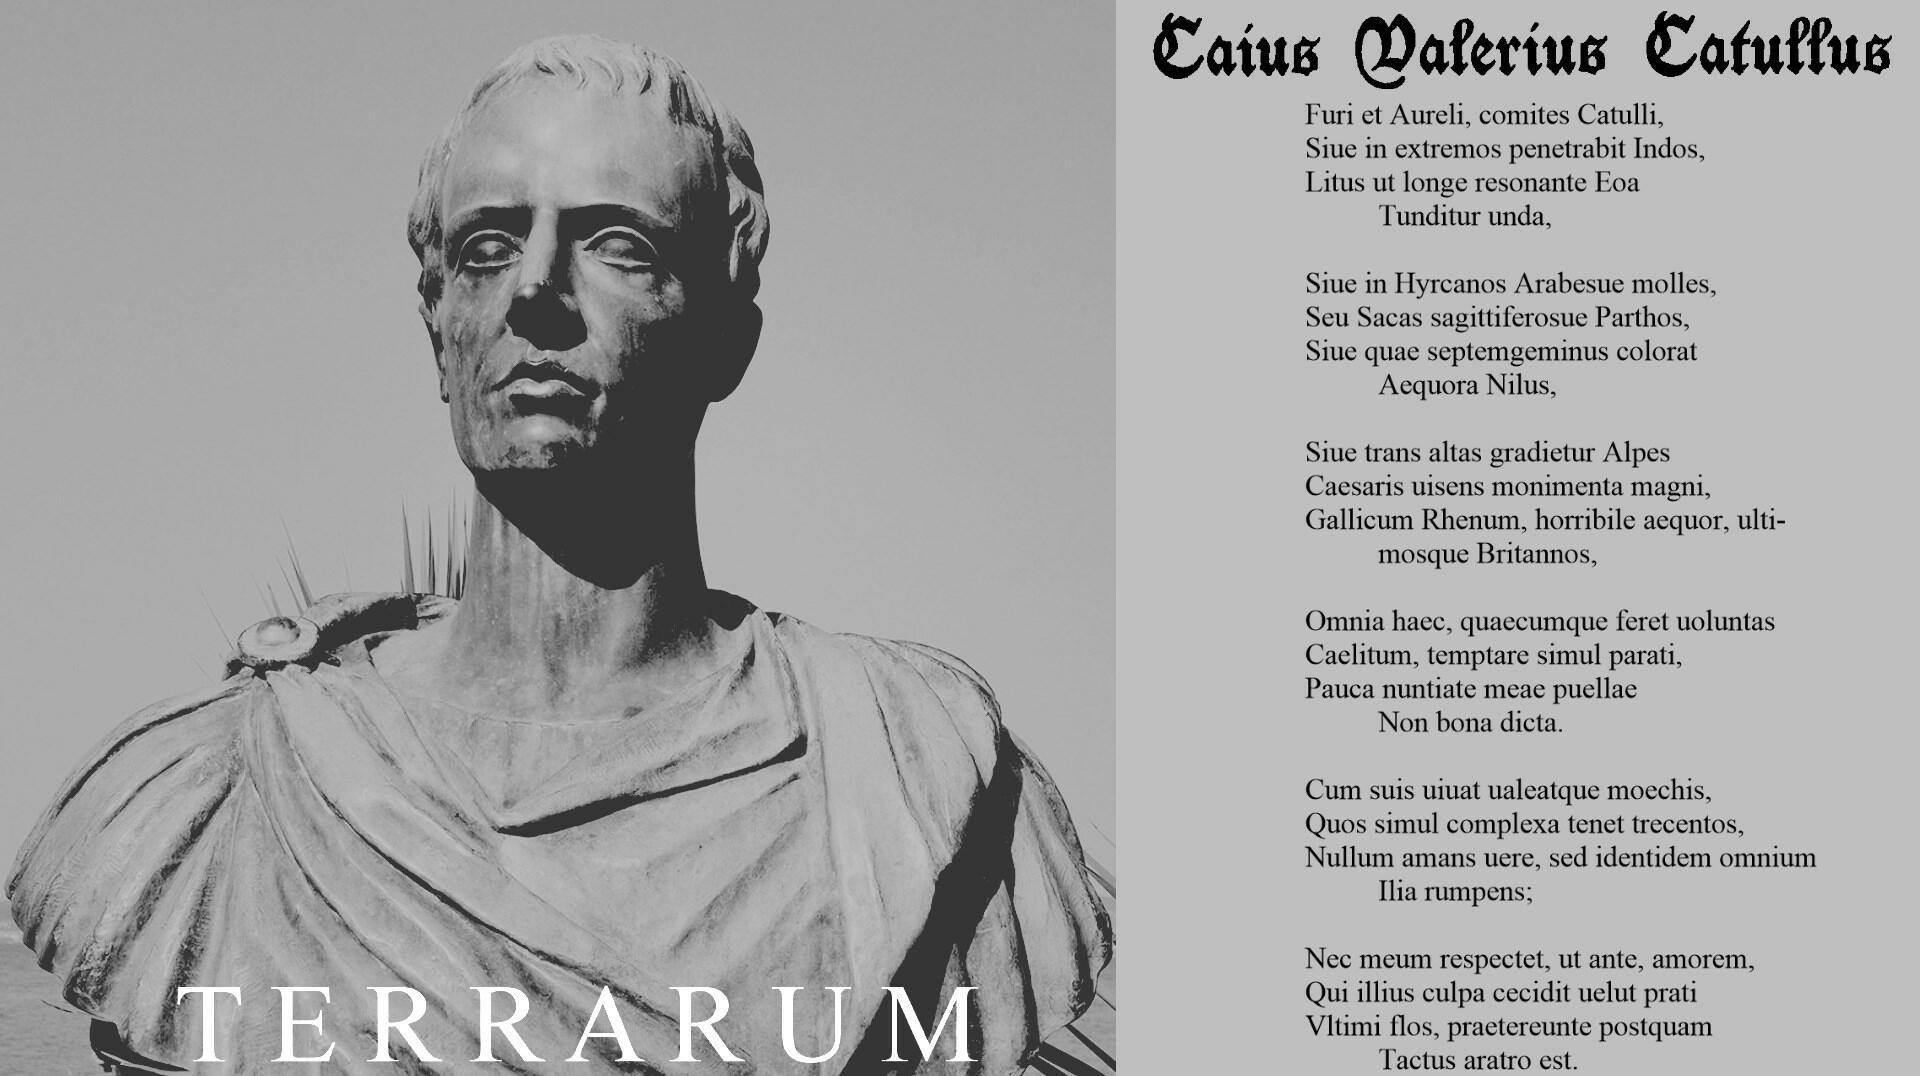 131. Catullus. Furi et Aureli, comites Catulli